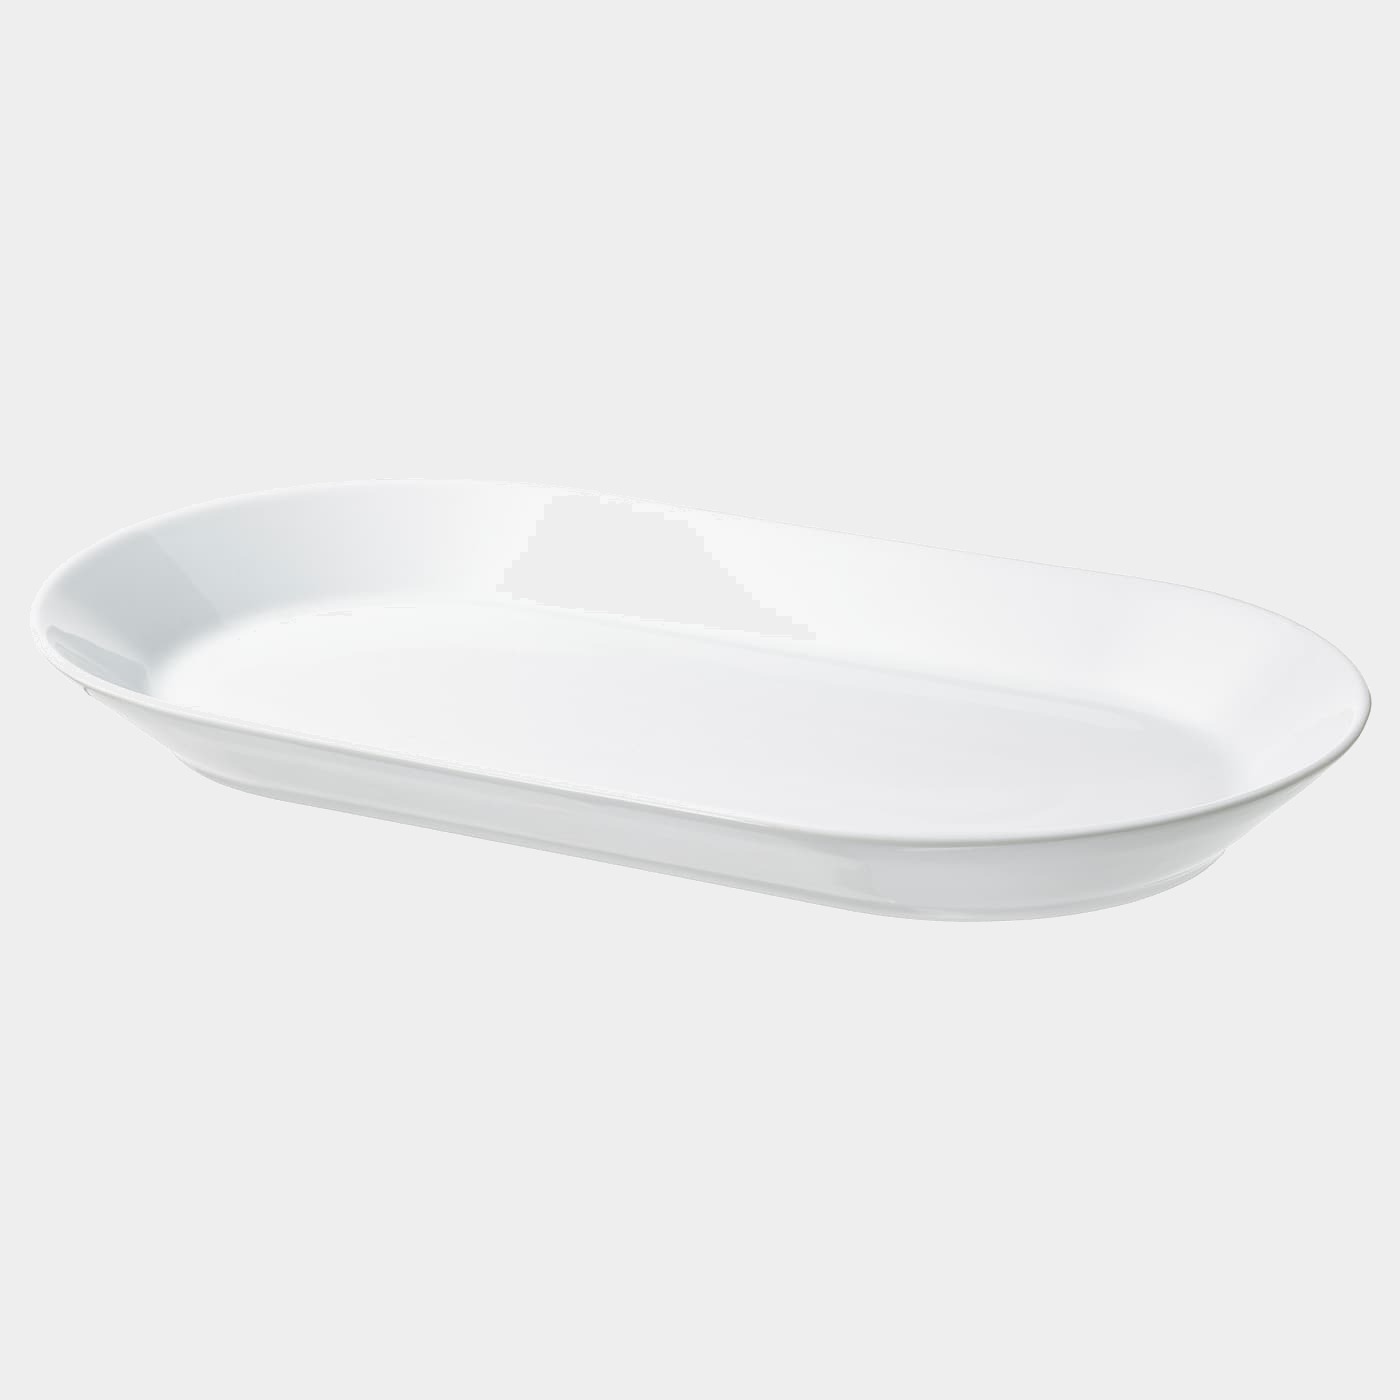 IKEA 365+ Servierplatte  - Servierplatten - Geschirr & Küchenaccessoires Ideen für dein Zuhause von Home Trends. Geschirr & Küchenaccessoires Trends von Social Media Influencer für dein Skandi Zuhause.